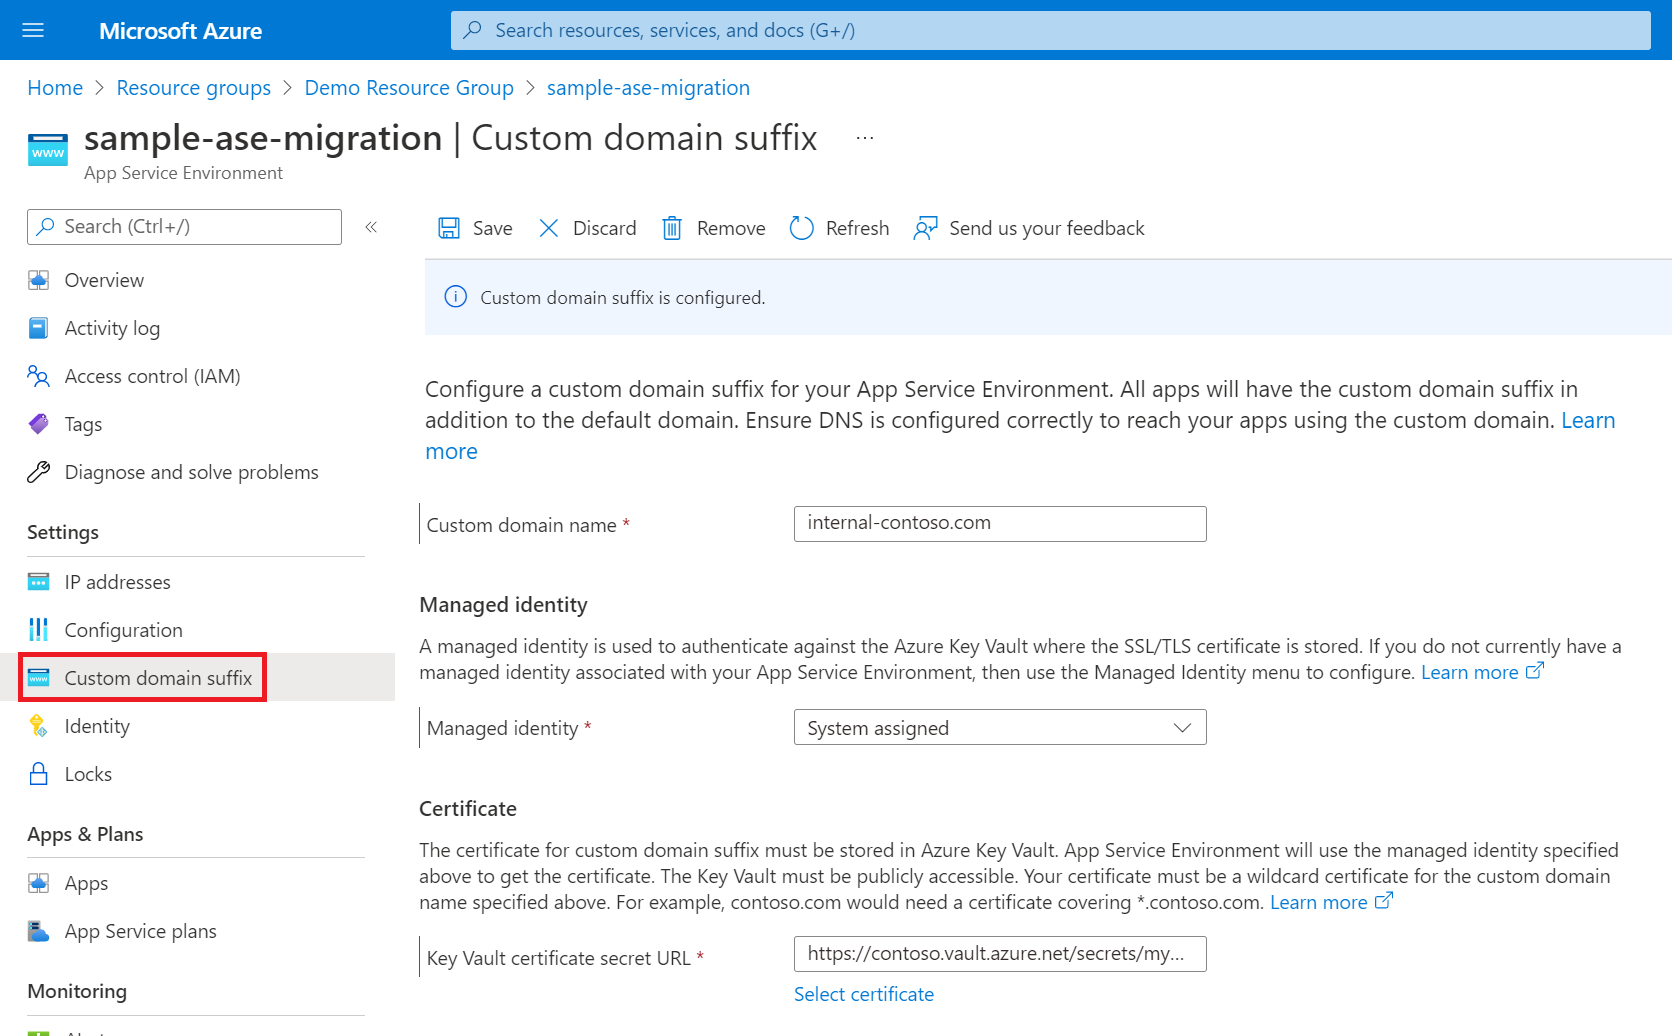 Captura de pantalla que muestra la página para la configuración del sufijo de dominio personalizado para App Service Environment v3.